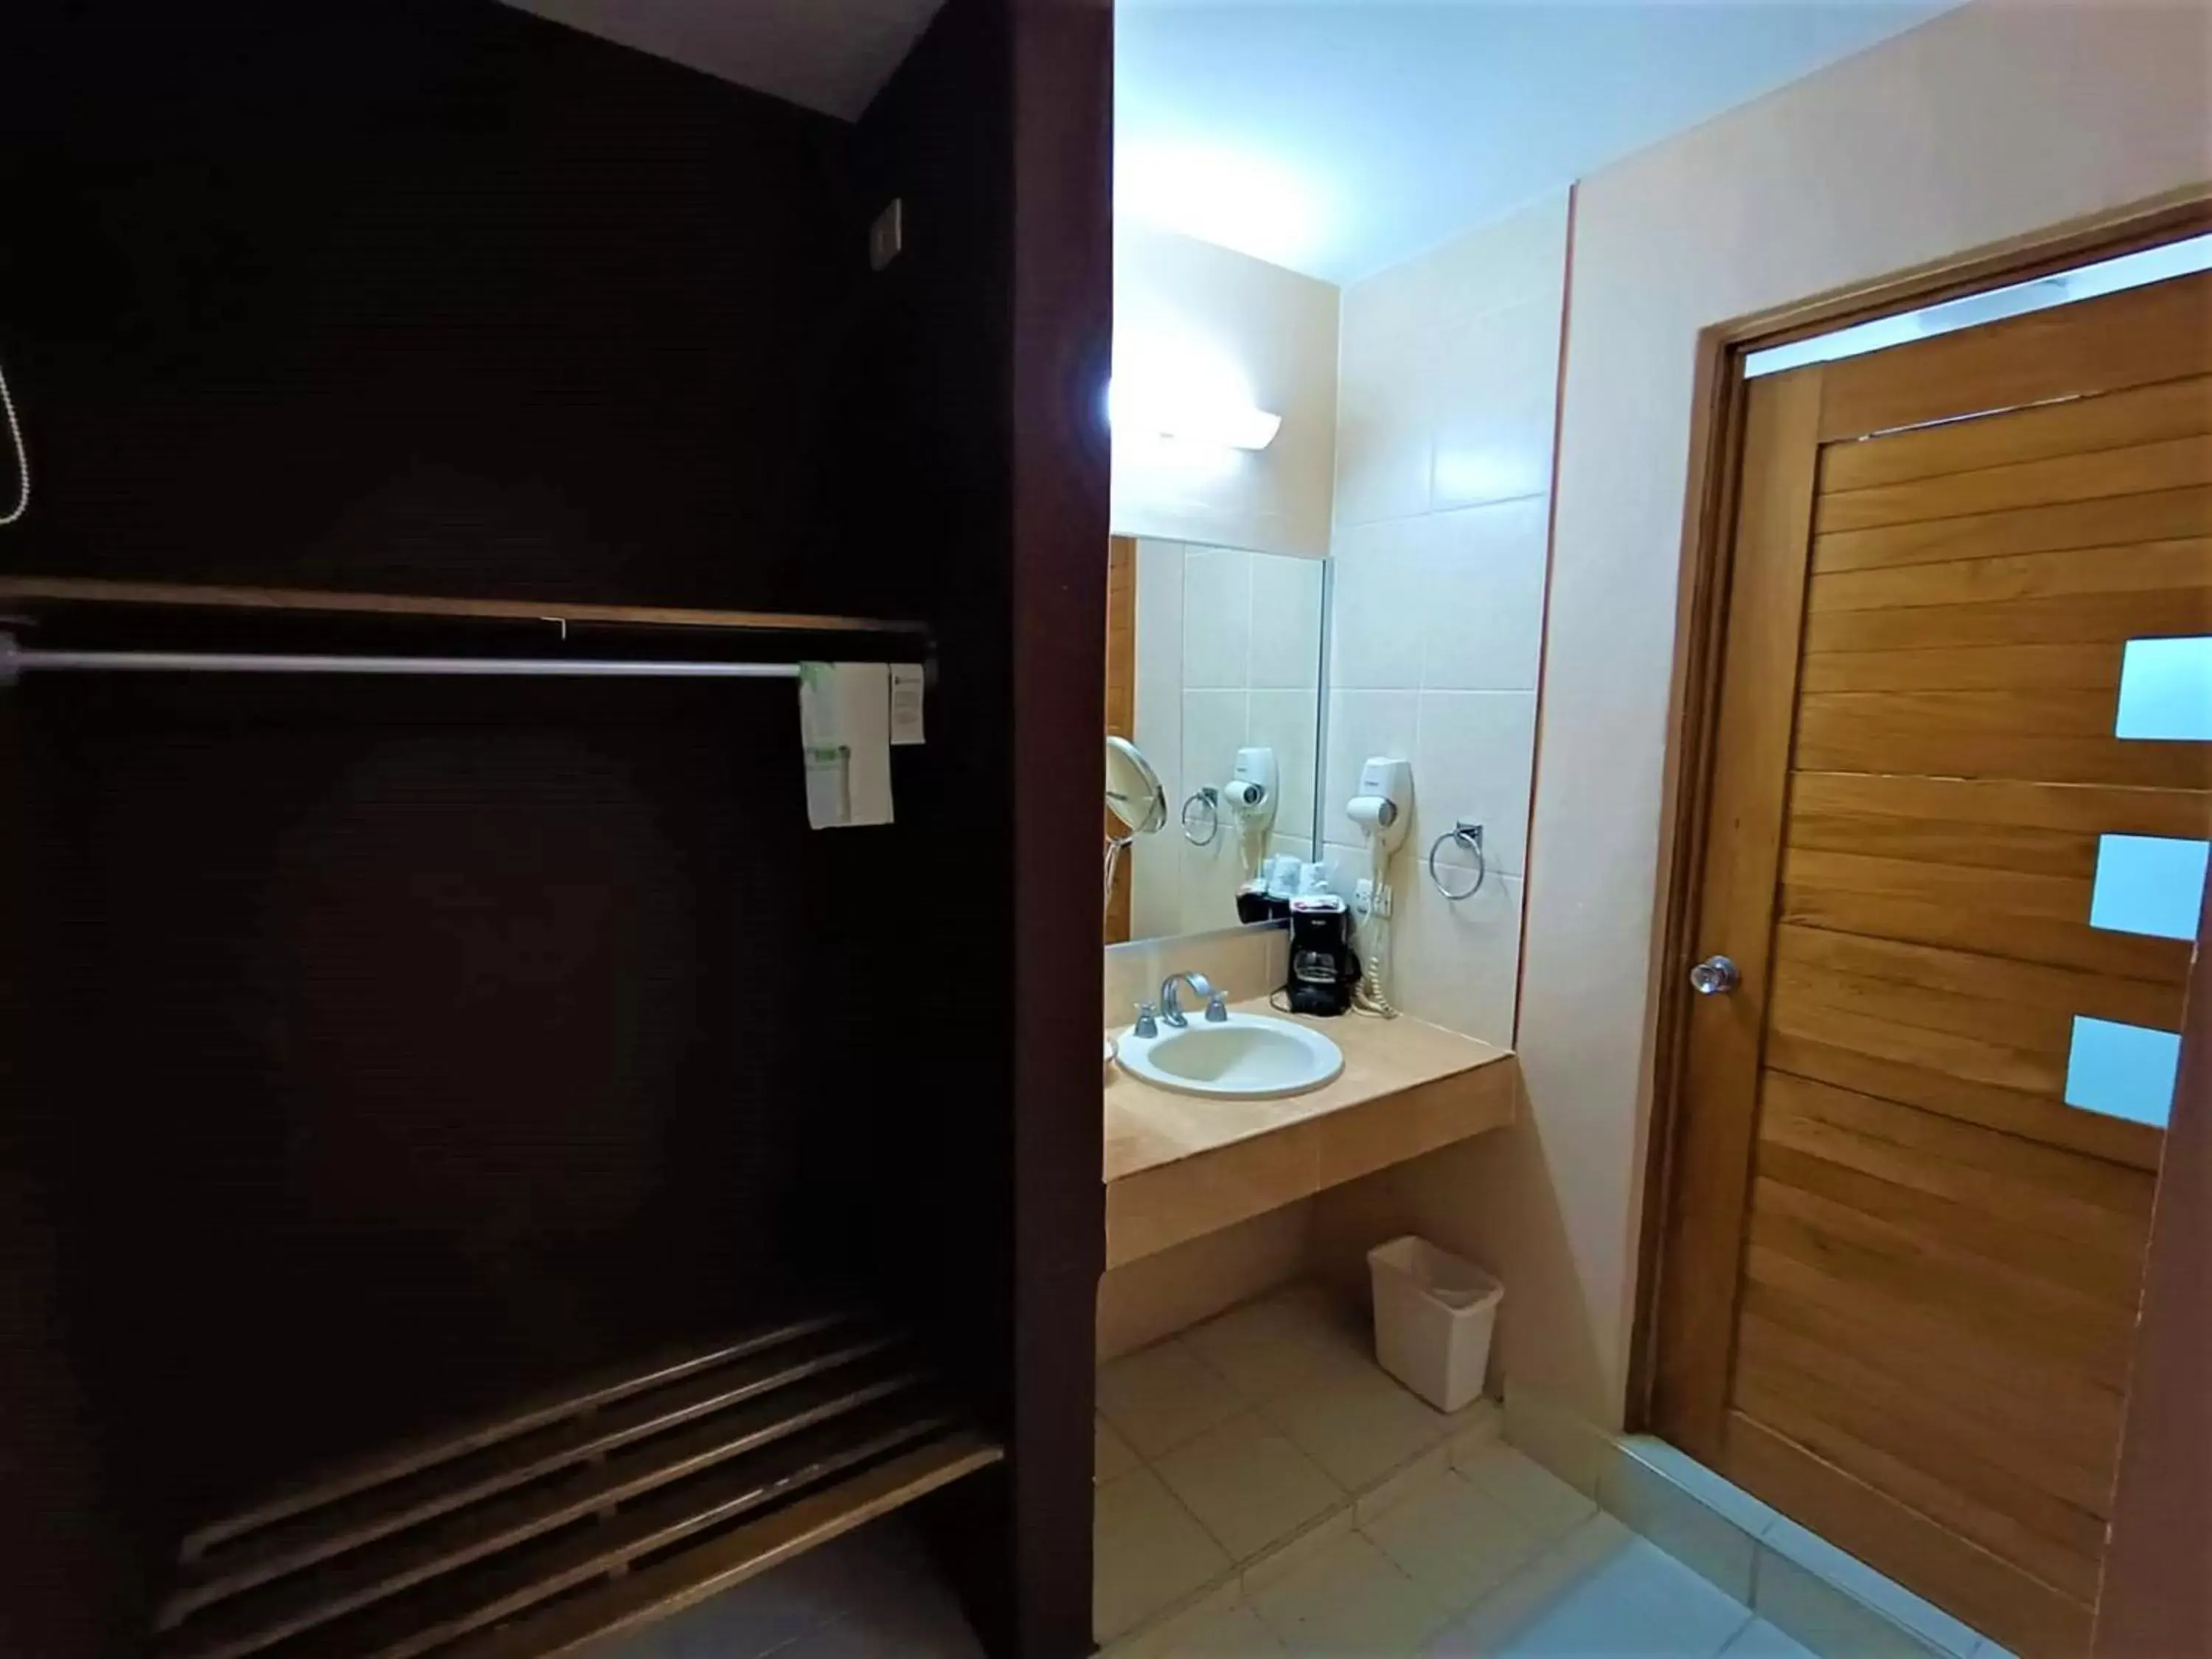 Bathroom in Hotel Santo Domingo Express